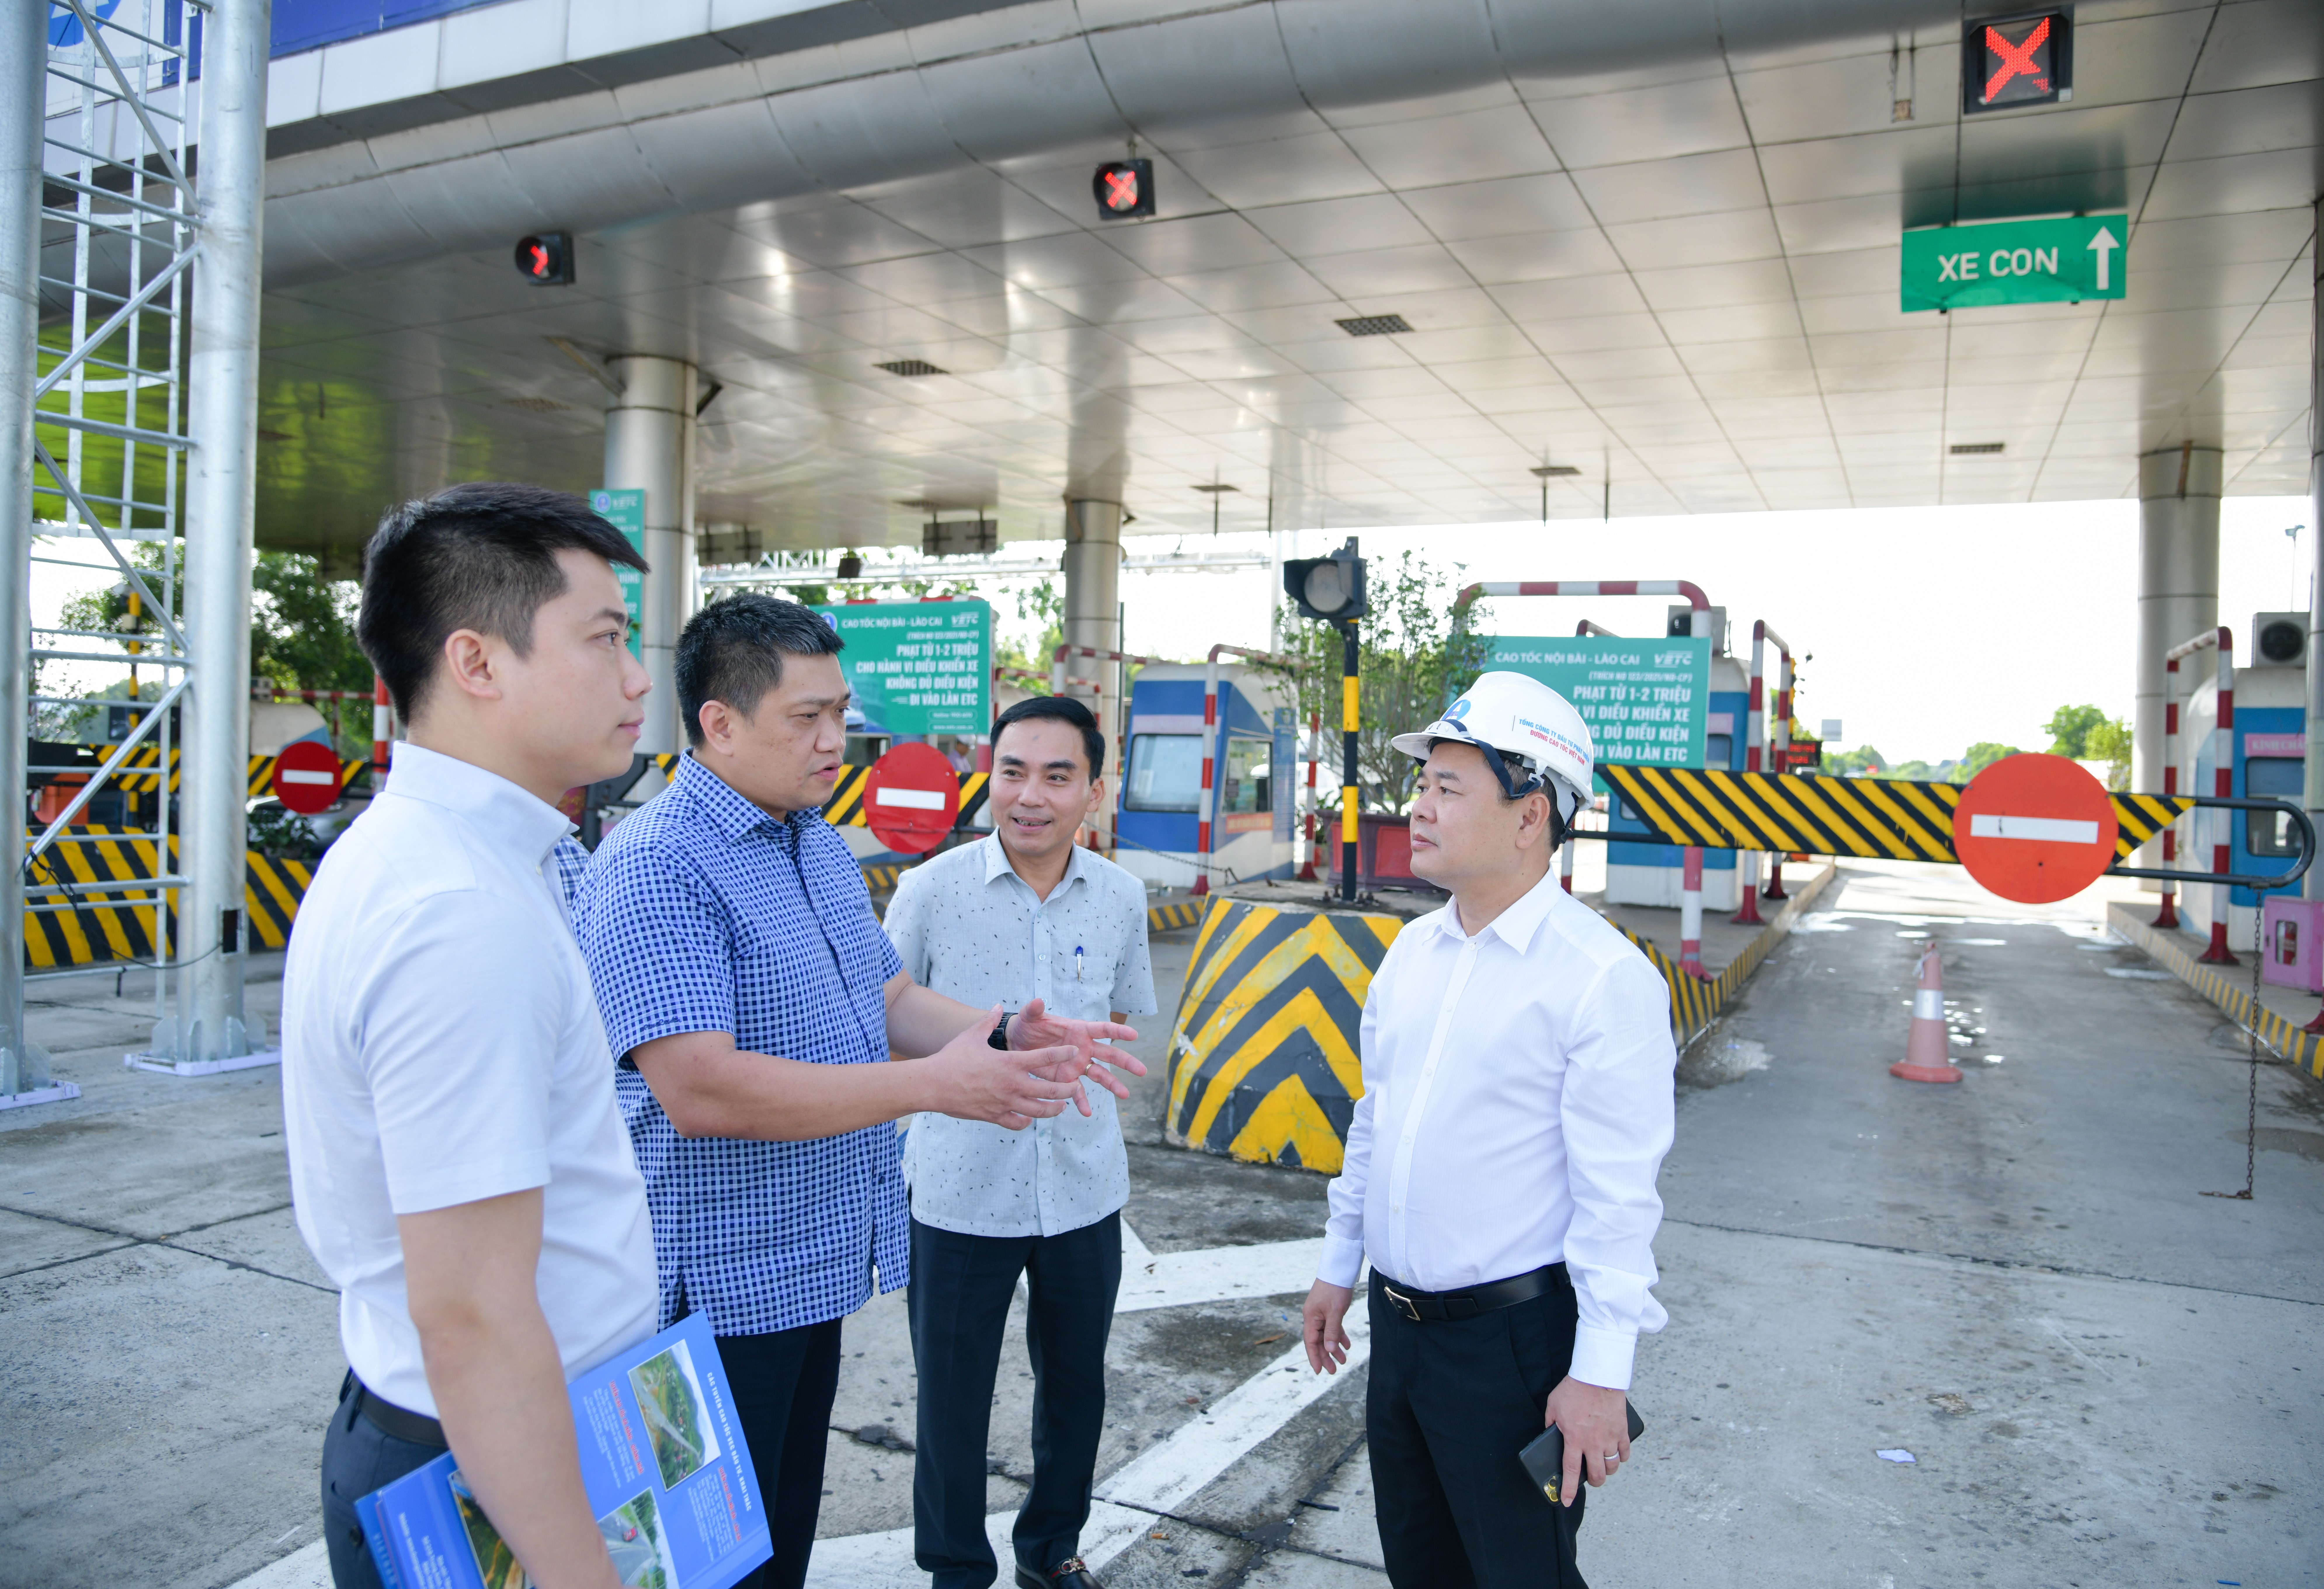 Tổng giám đốc VEC Phạm Hồng Quang báo cáo Phó Chủ tịch CMSC Nguyễn Ngọc Cảnh những khó khăn thách thức trong quá trình thi công lắp đặt thi công hệ thống thu phí ETC trên các tuyến cao tốc VEC quản lý, khai thác